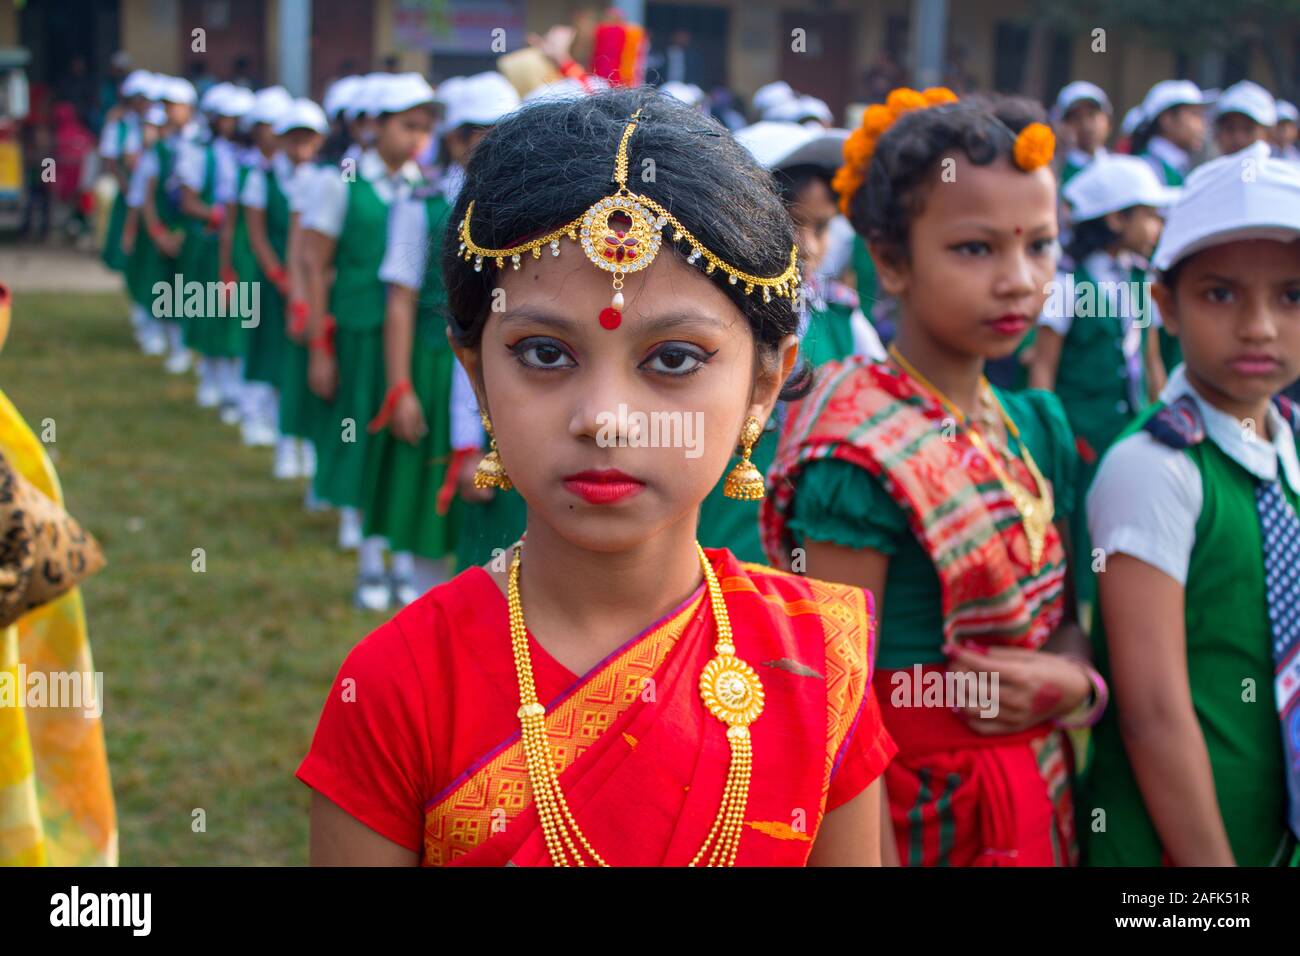 Tradizionalmente celebra la Giornata della vittoria del Bangladesh: South Asian Italian partecipano fancy dress concorrenza da indossare gioielli e bigiotteria Foto Stock